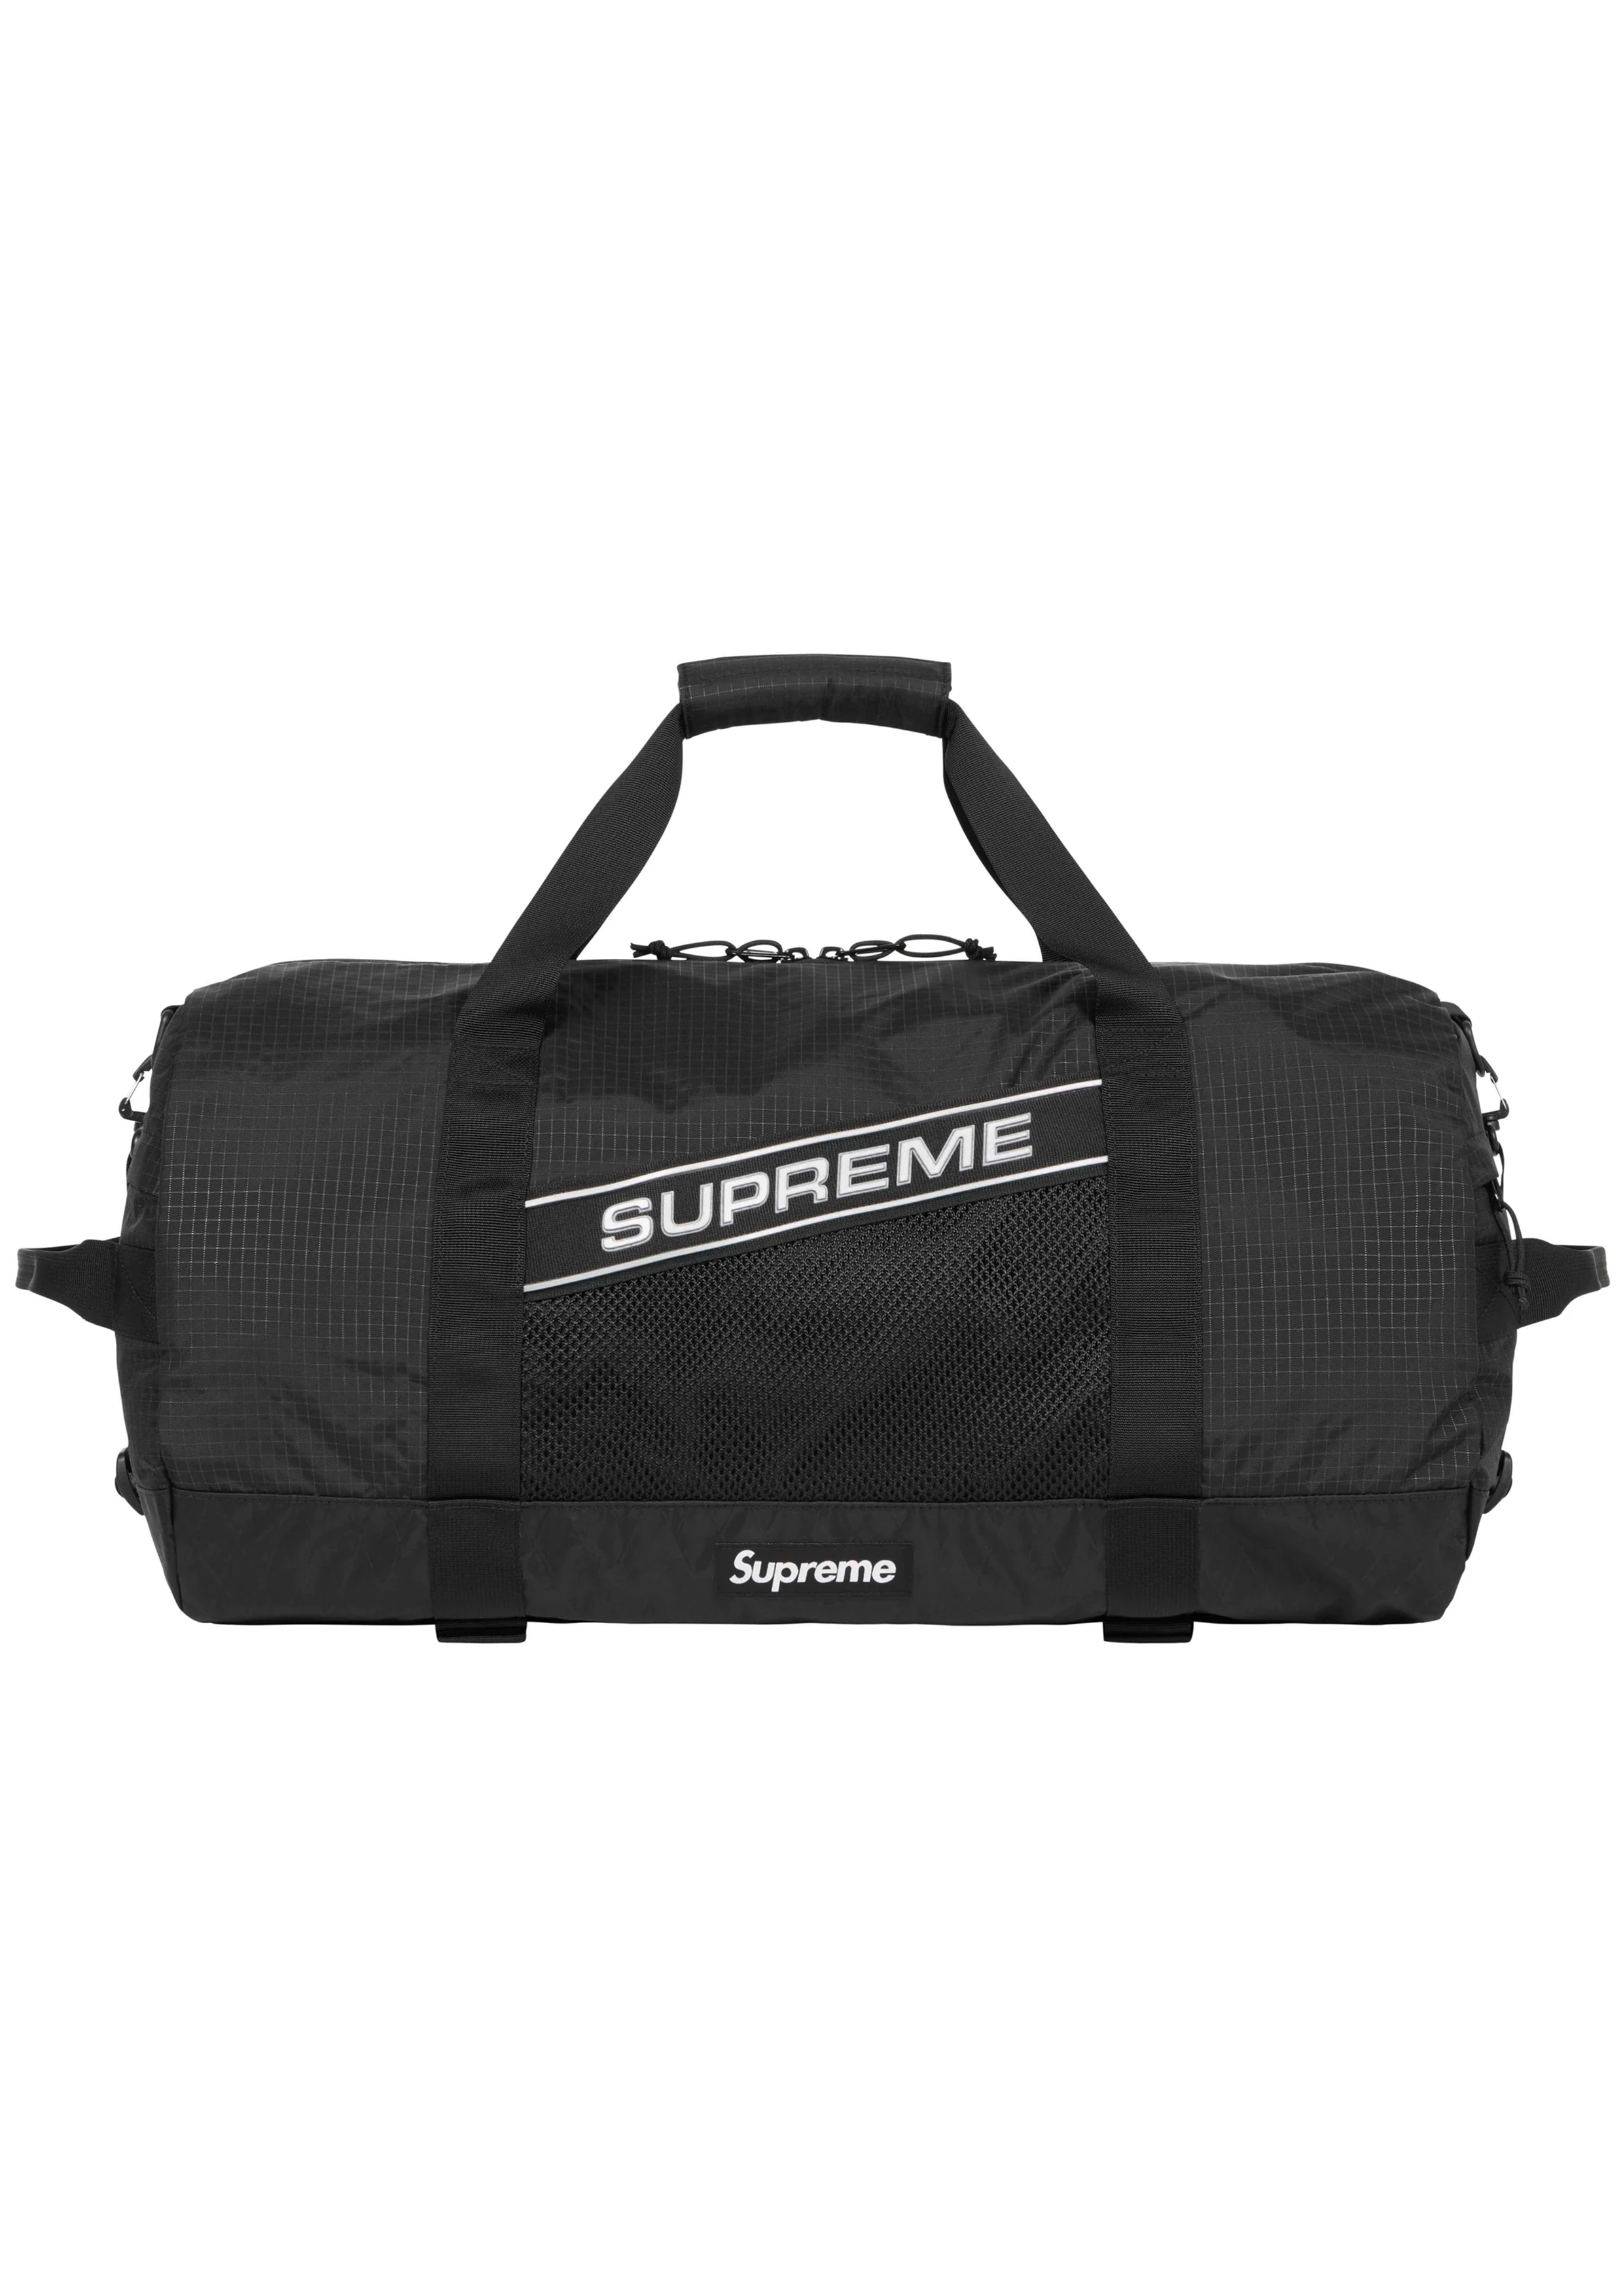 supreme Duffle Bag Waist Bag 2点set